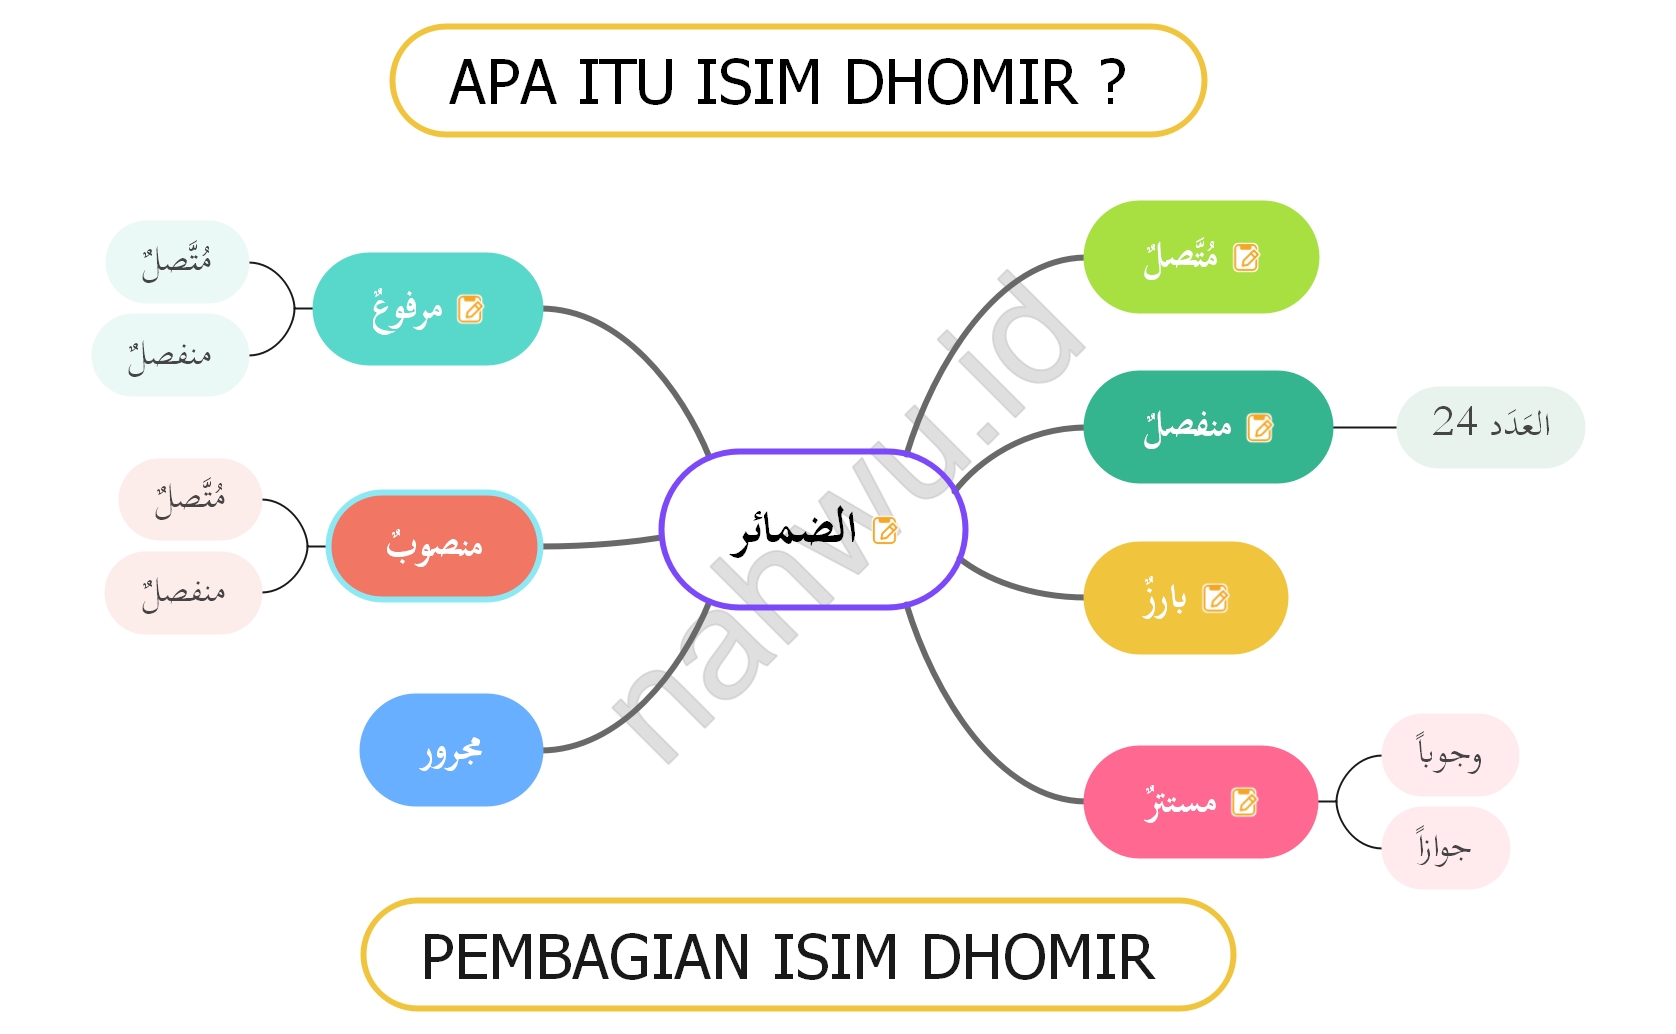 Apa Itu Isim Dhomir dan Contohnya?